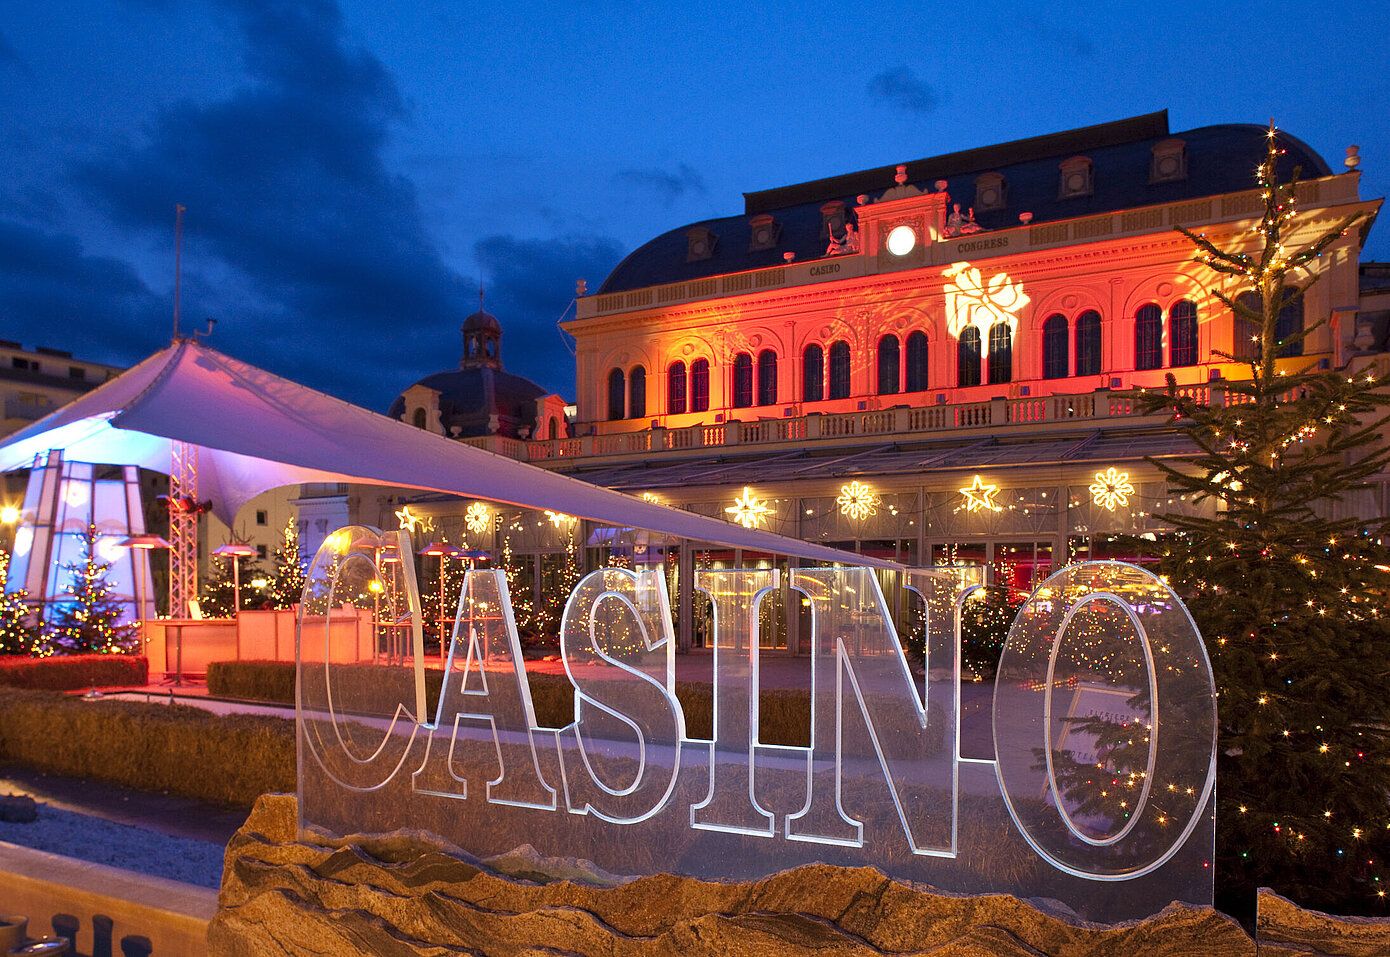 csm_casino-baden-advent-terrasse_d4020613d0.jpg